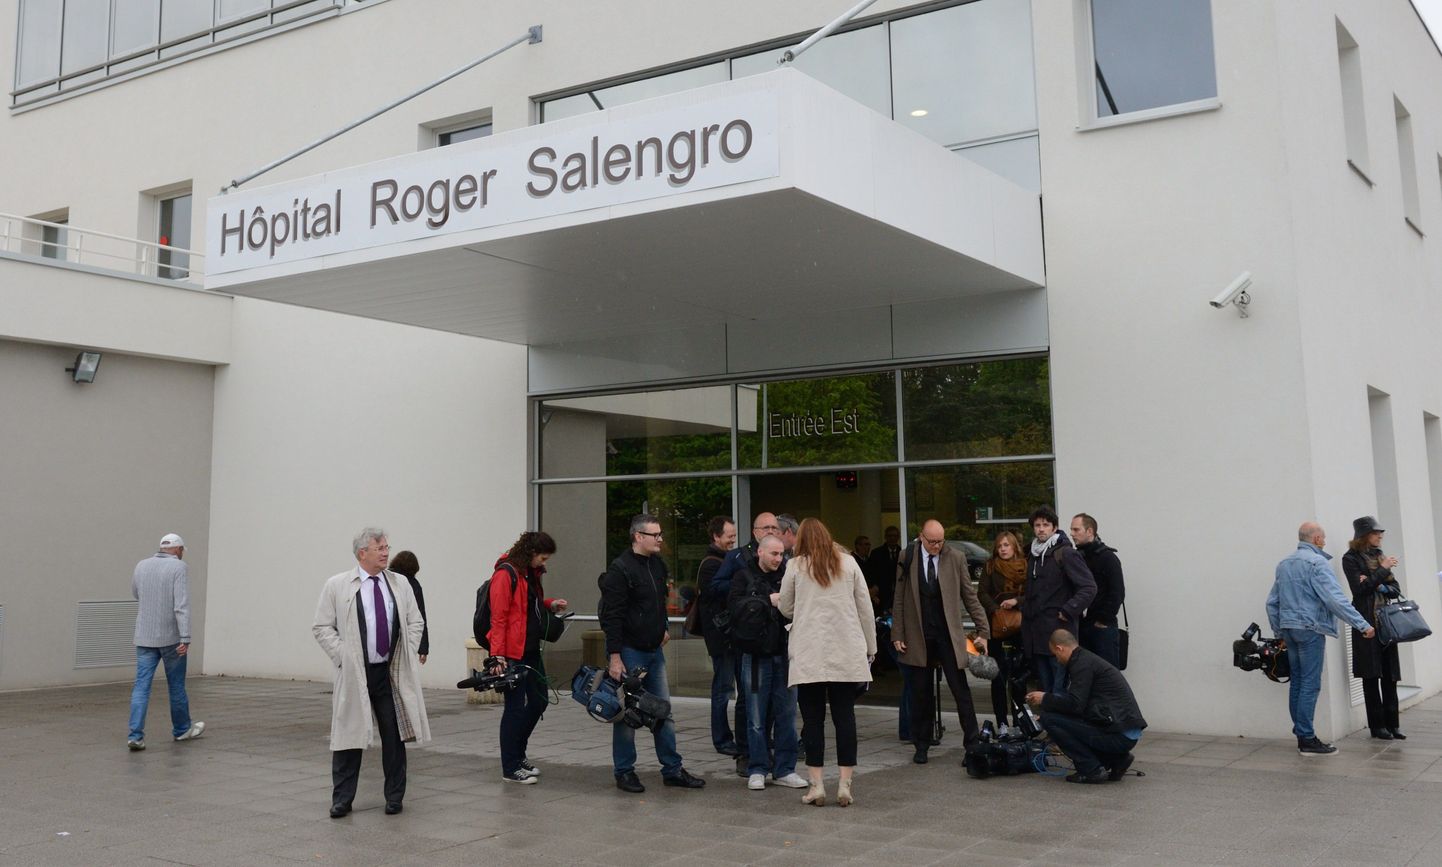 Ajakirjanikud ootavad teavet Lille'is  Roger Salengro haigla (CHRU) eest. ET